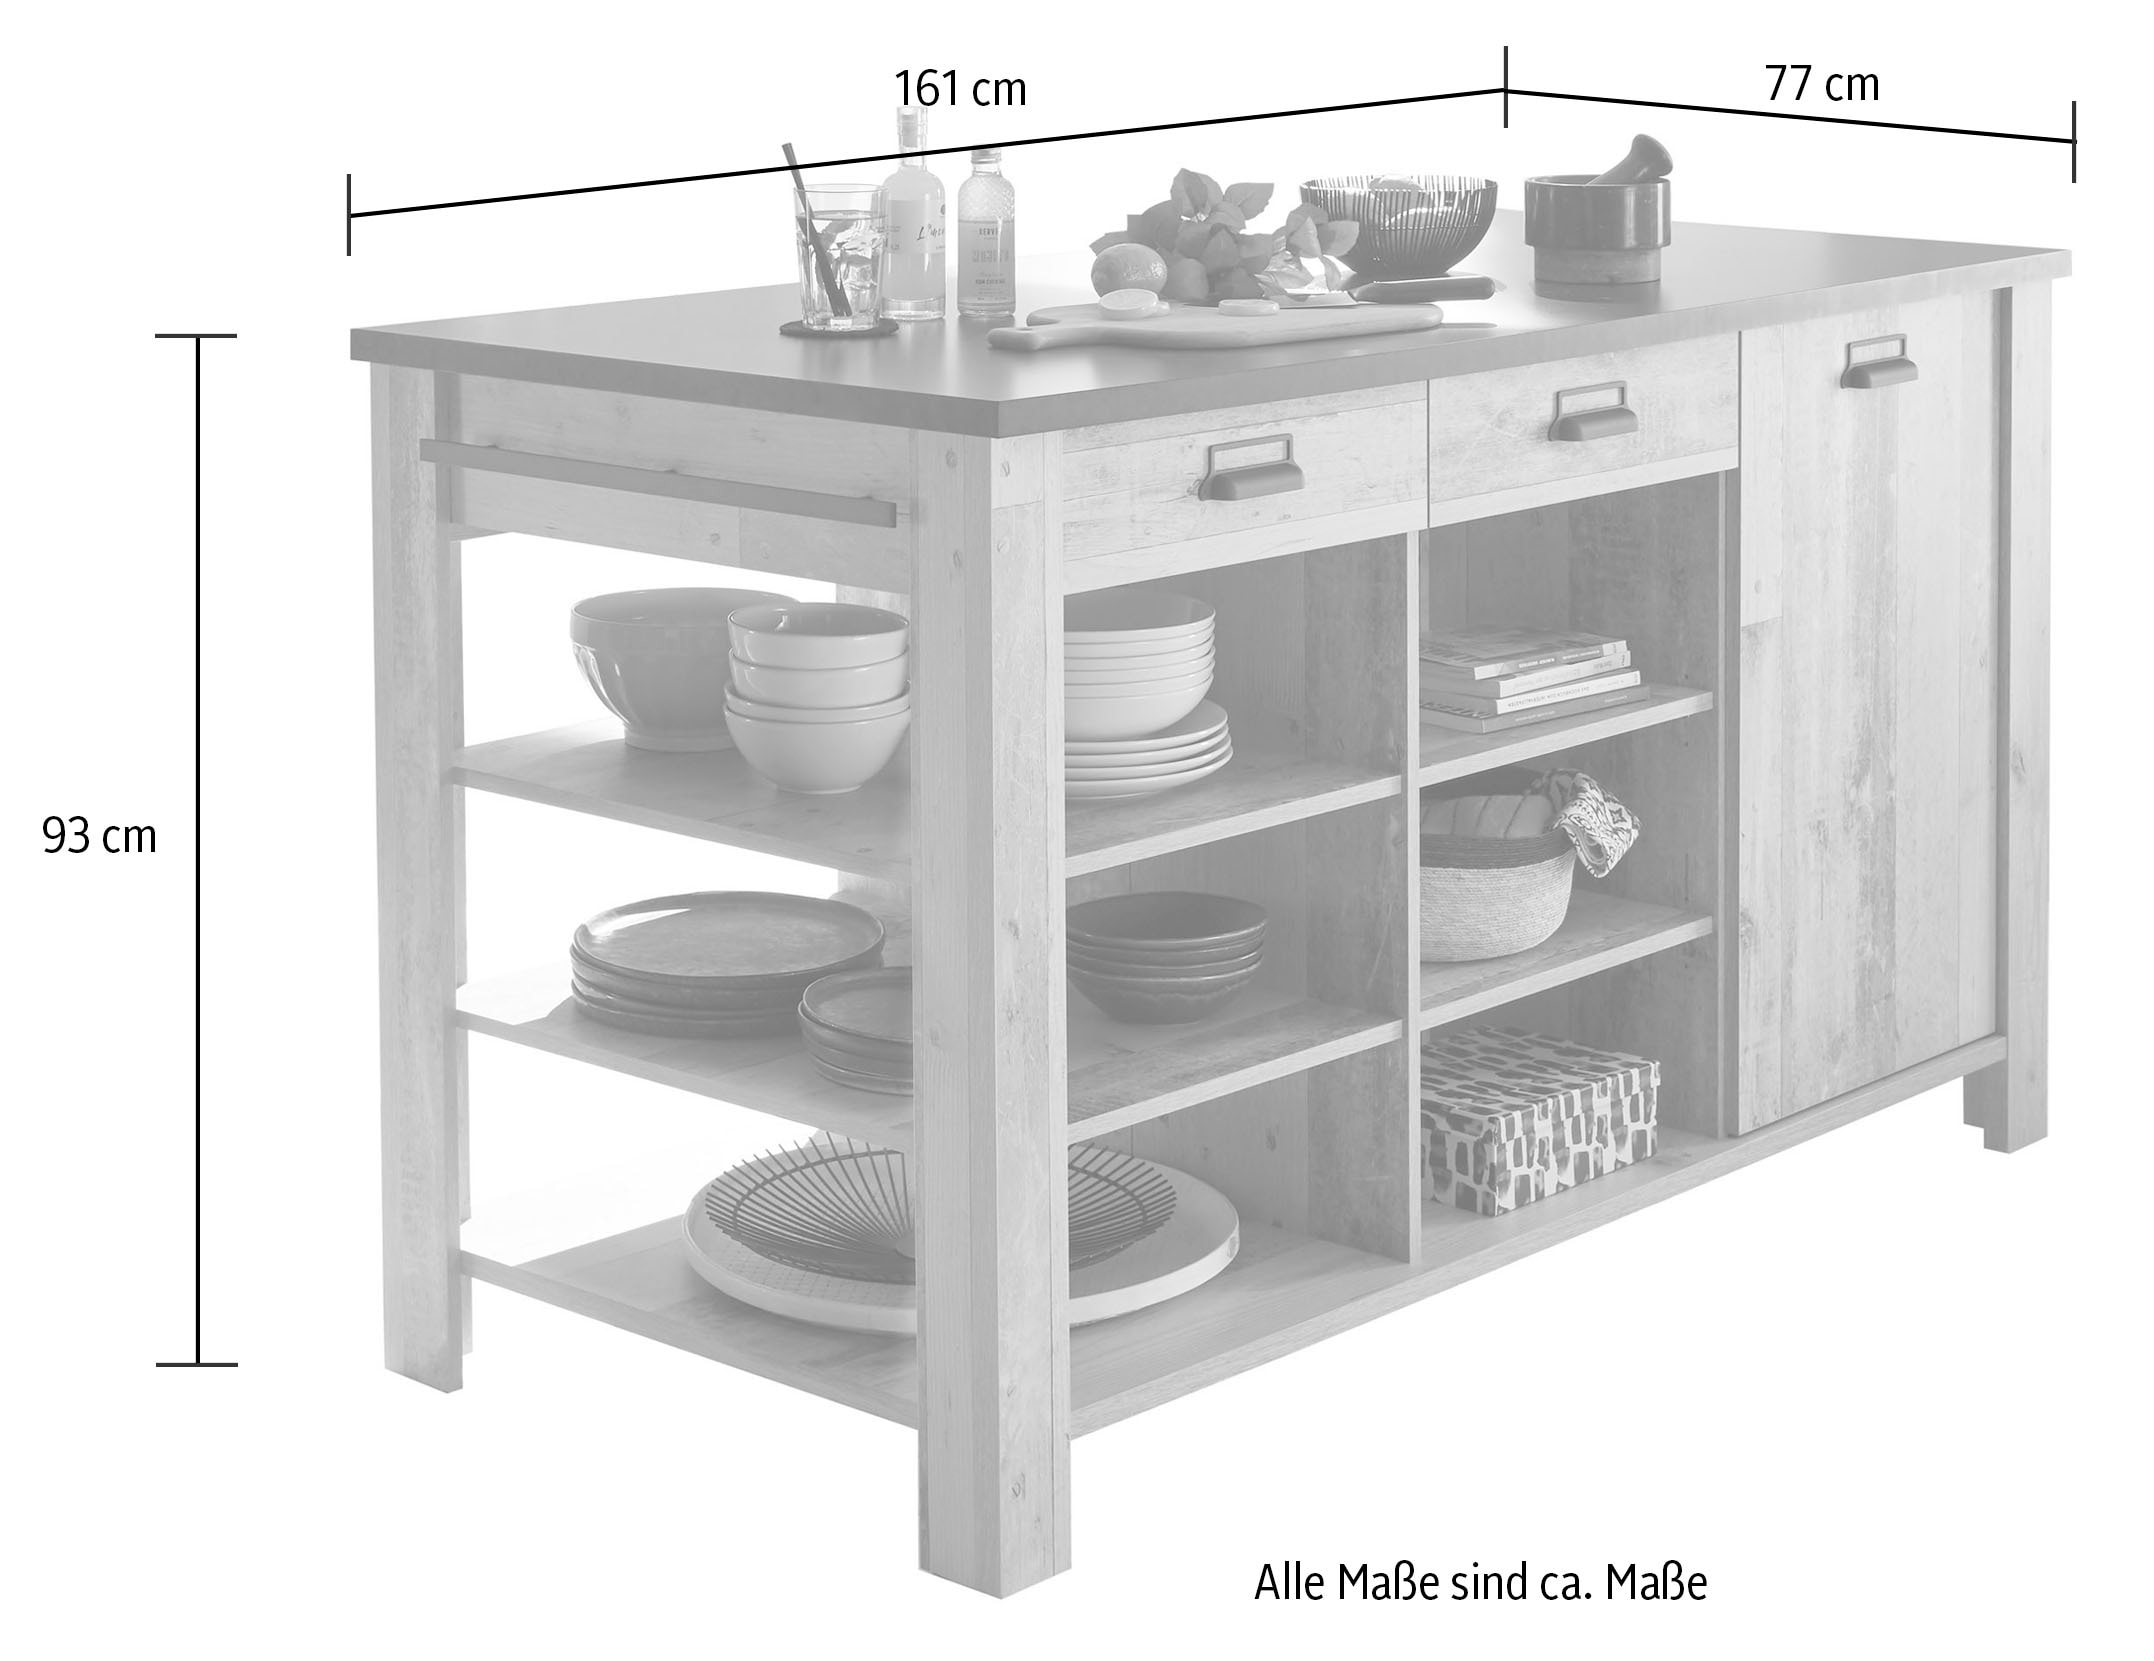 Home affaire Kücheninsel »Sherwood«, Handtuchhalter und Scheunentorbeschlag aus Metall, Breite ca. 161 cm